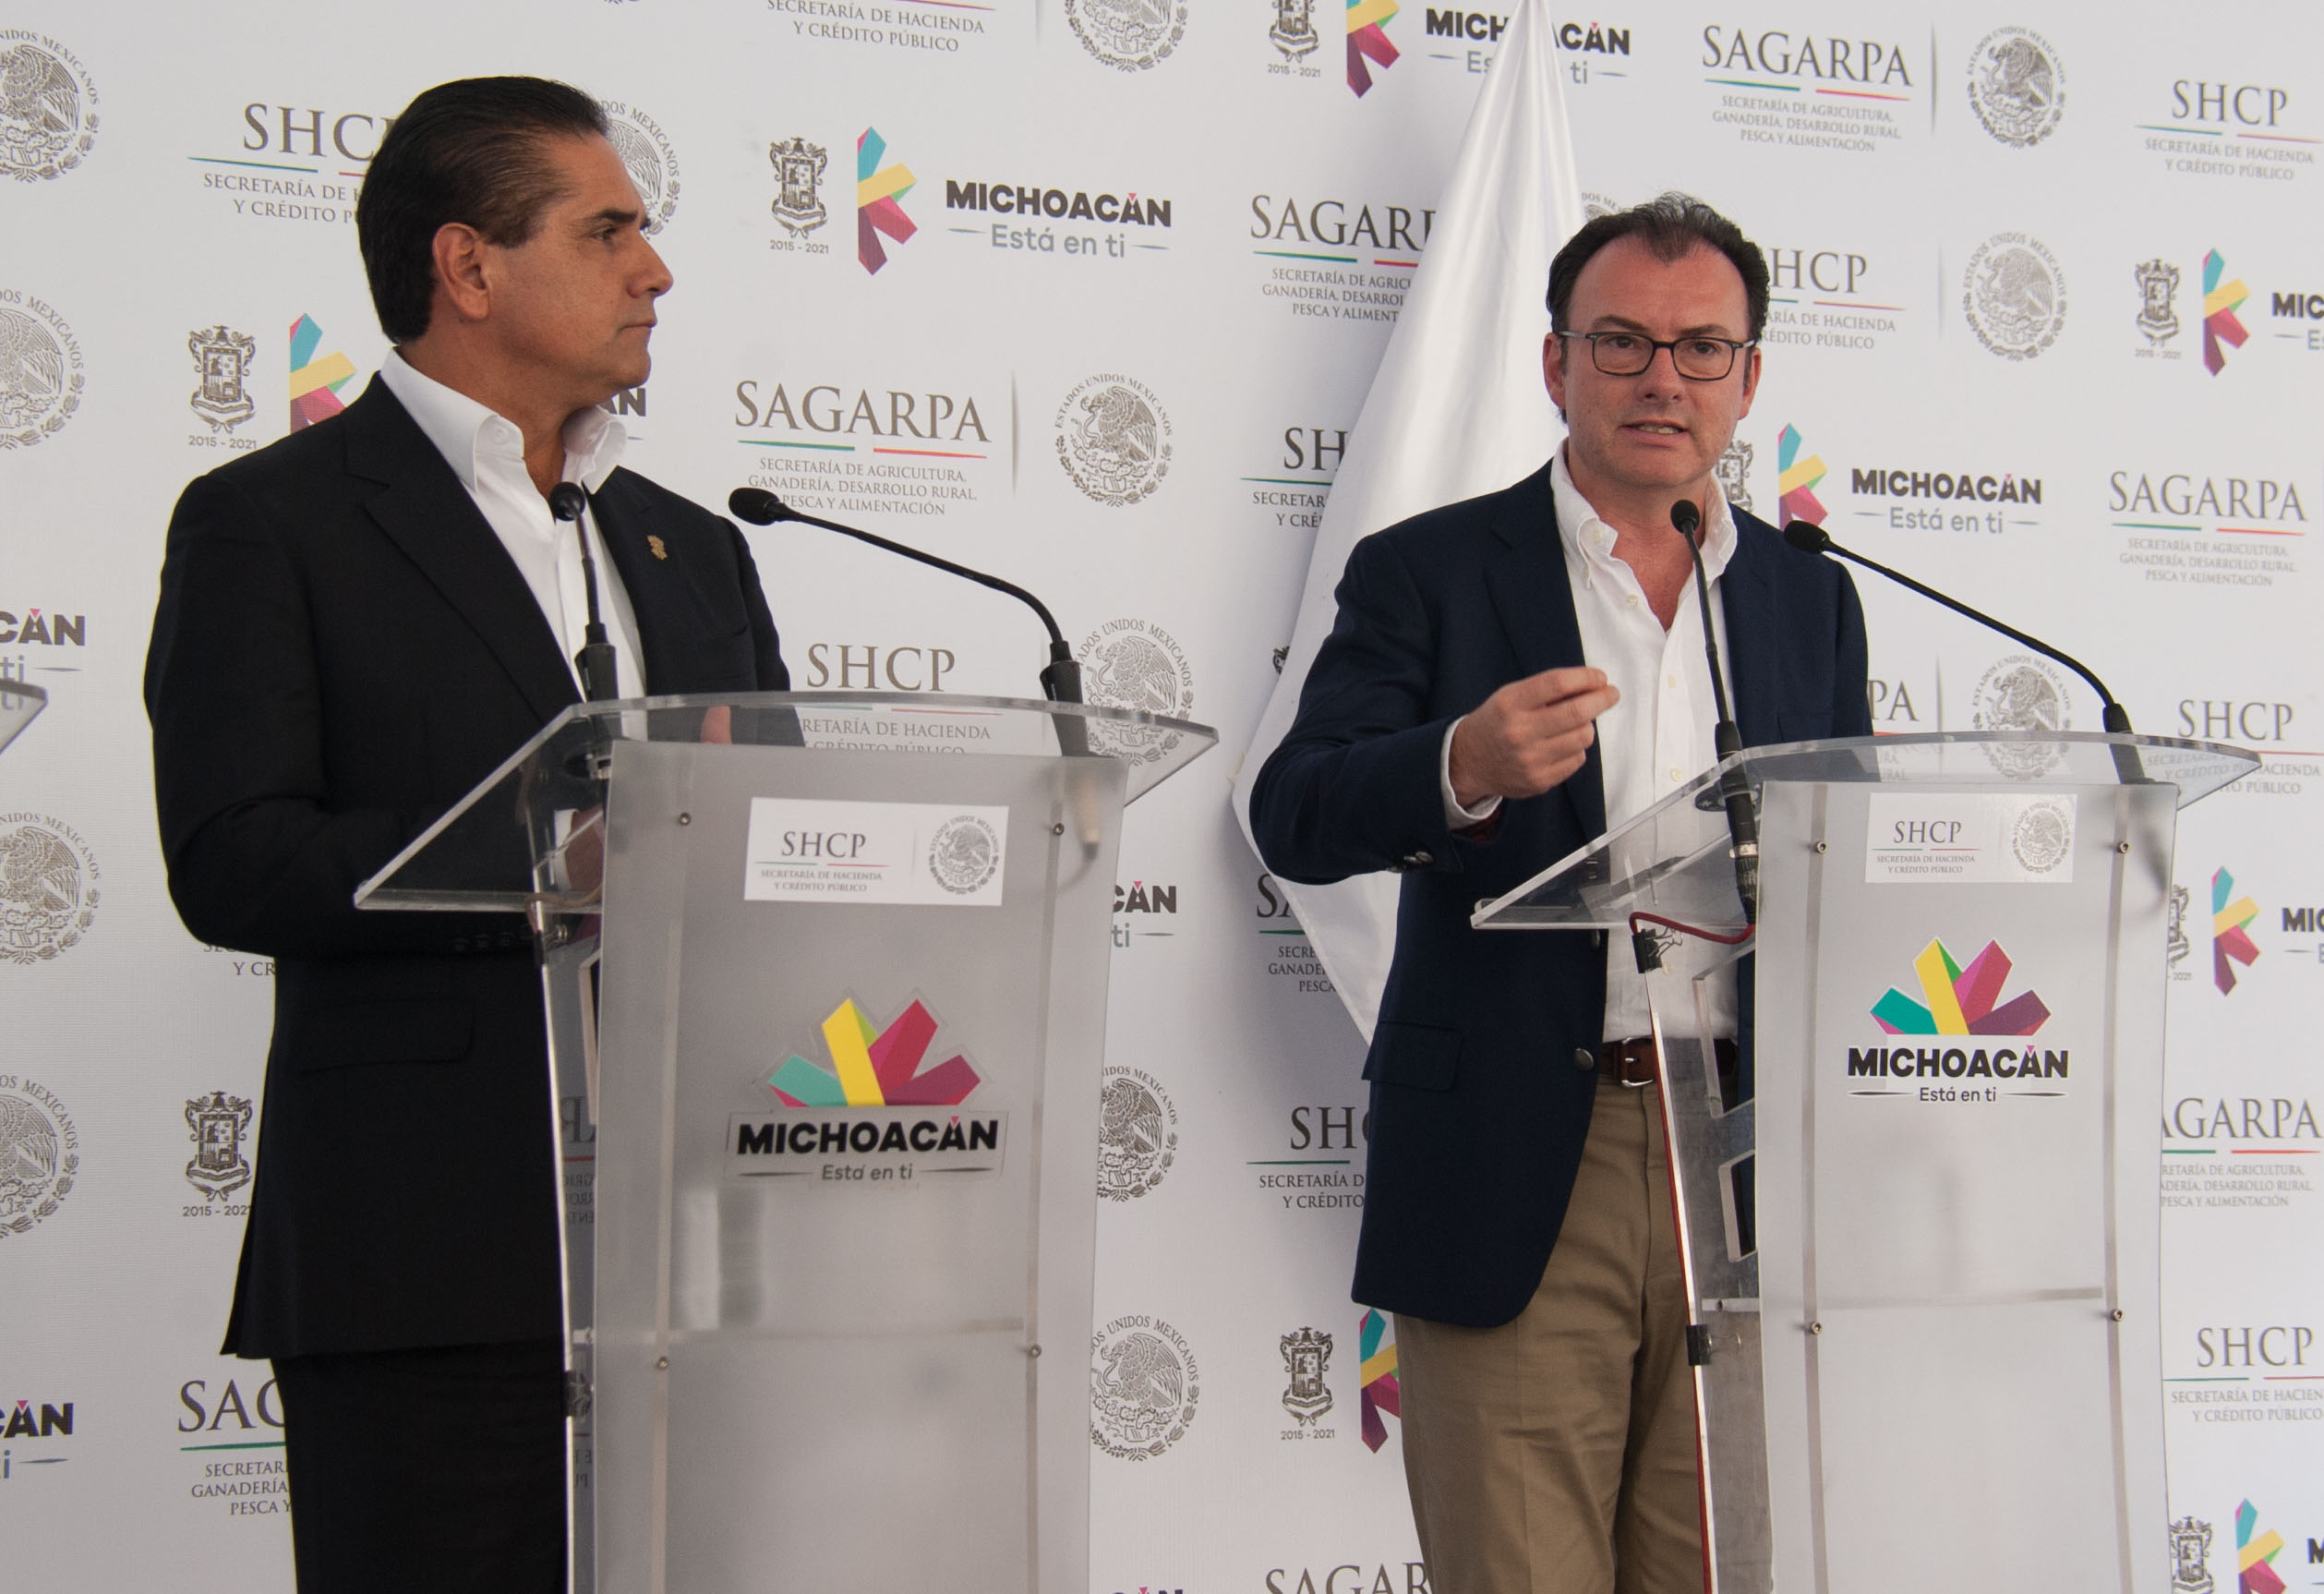 El Secretario de Hacienda, Luis Videgaray, y el Gobernador de Michoacán, Silvano Aureoles, en conferencia de prensa